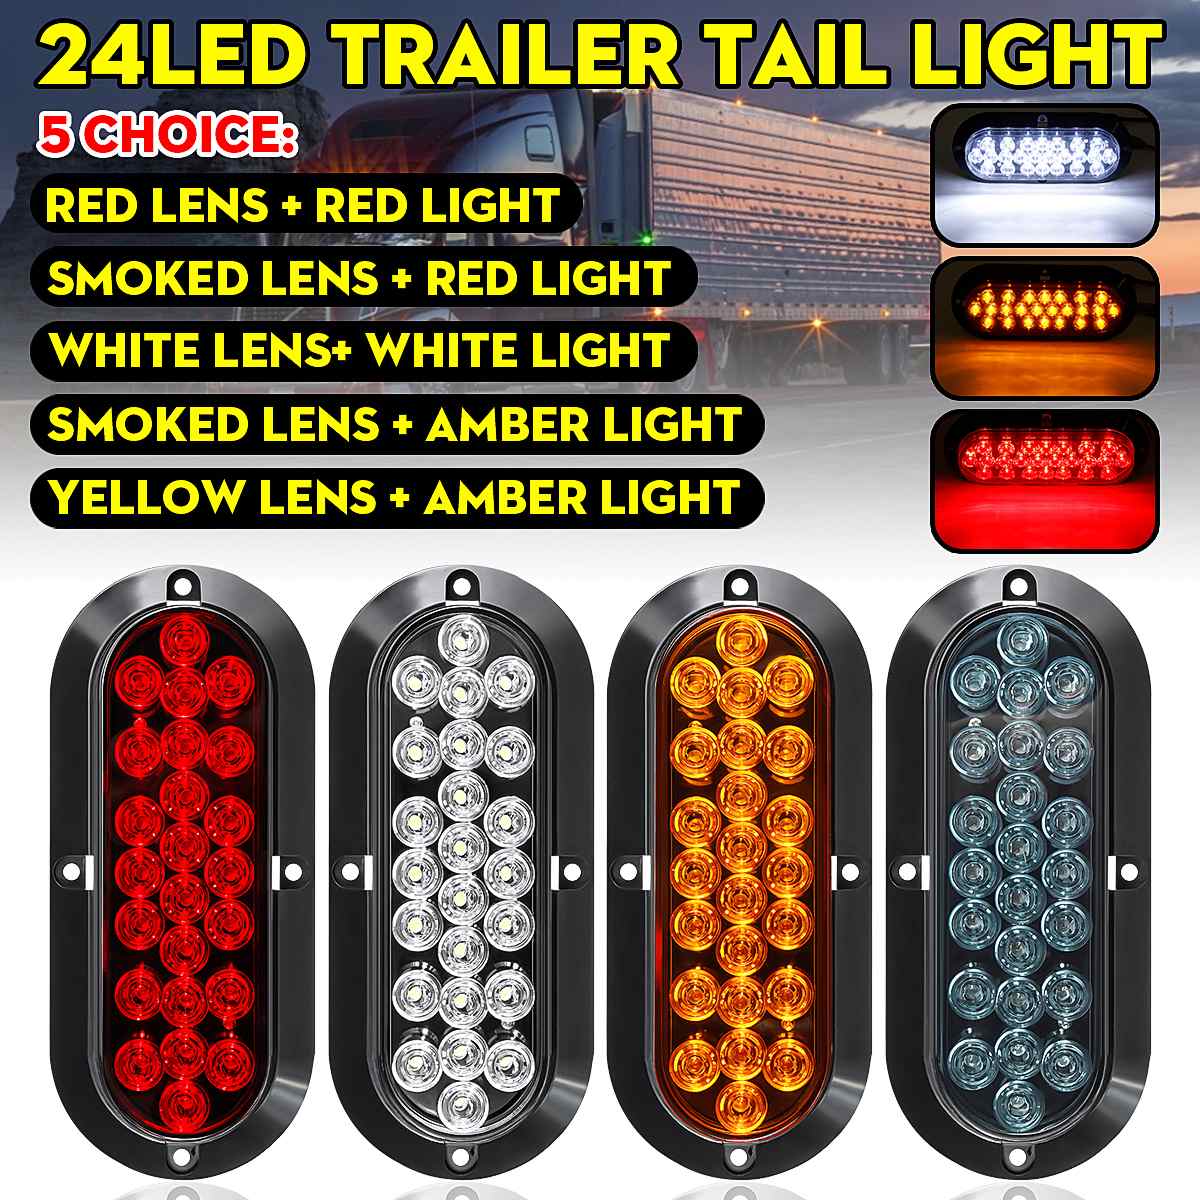 2pcs 6" 12V 24 Led Car Truck Side Marker Light Turn Signal Lamp Tail Light Brake Lamp for Trailer Bus Boat Lorry Caravan